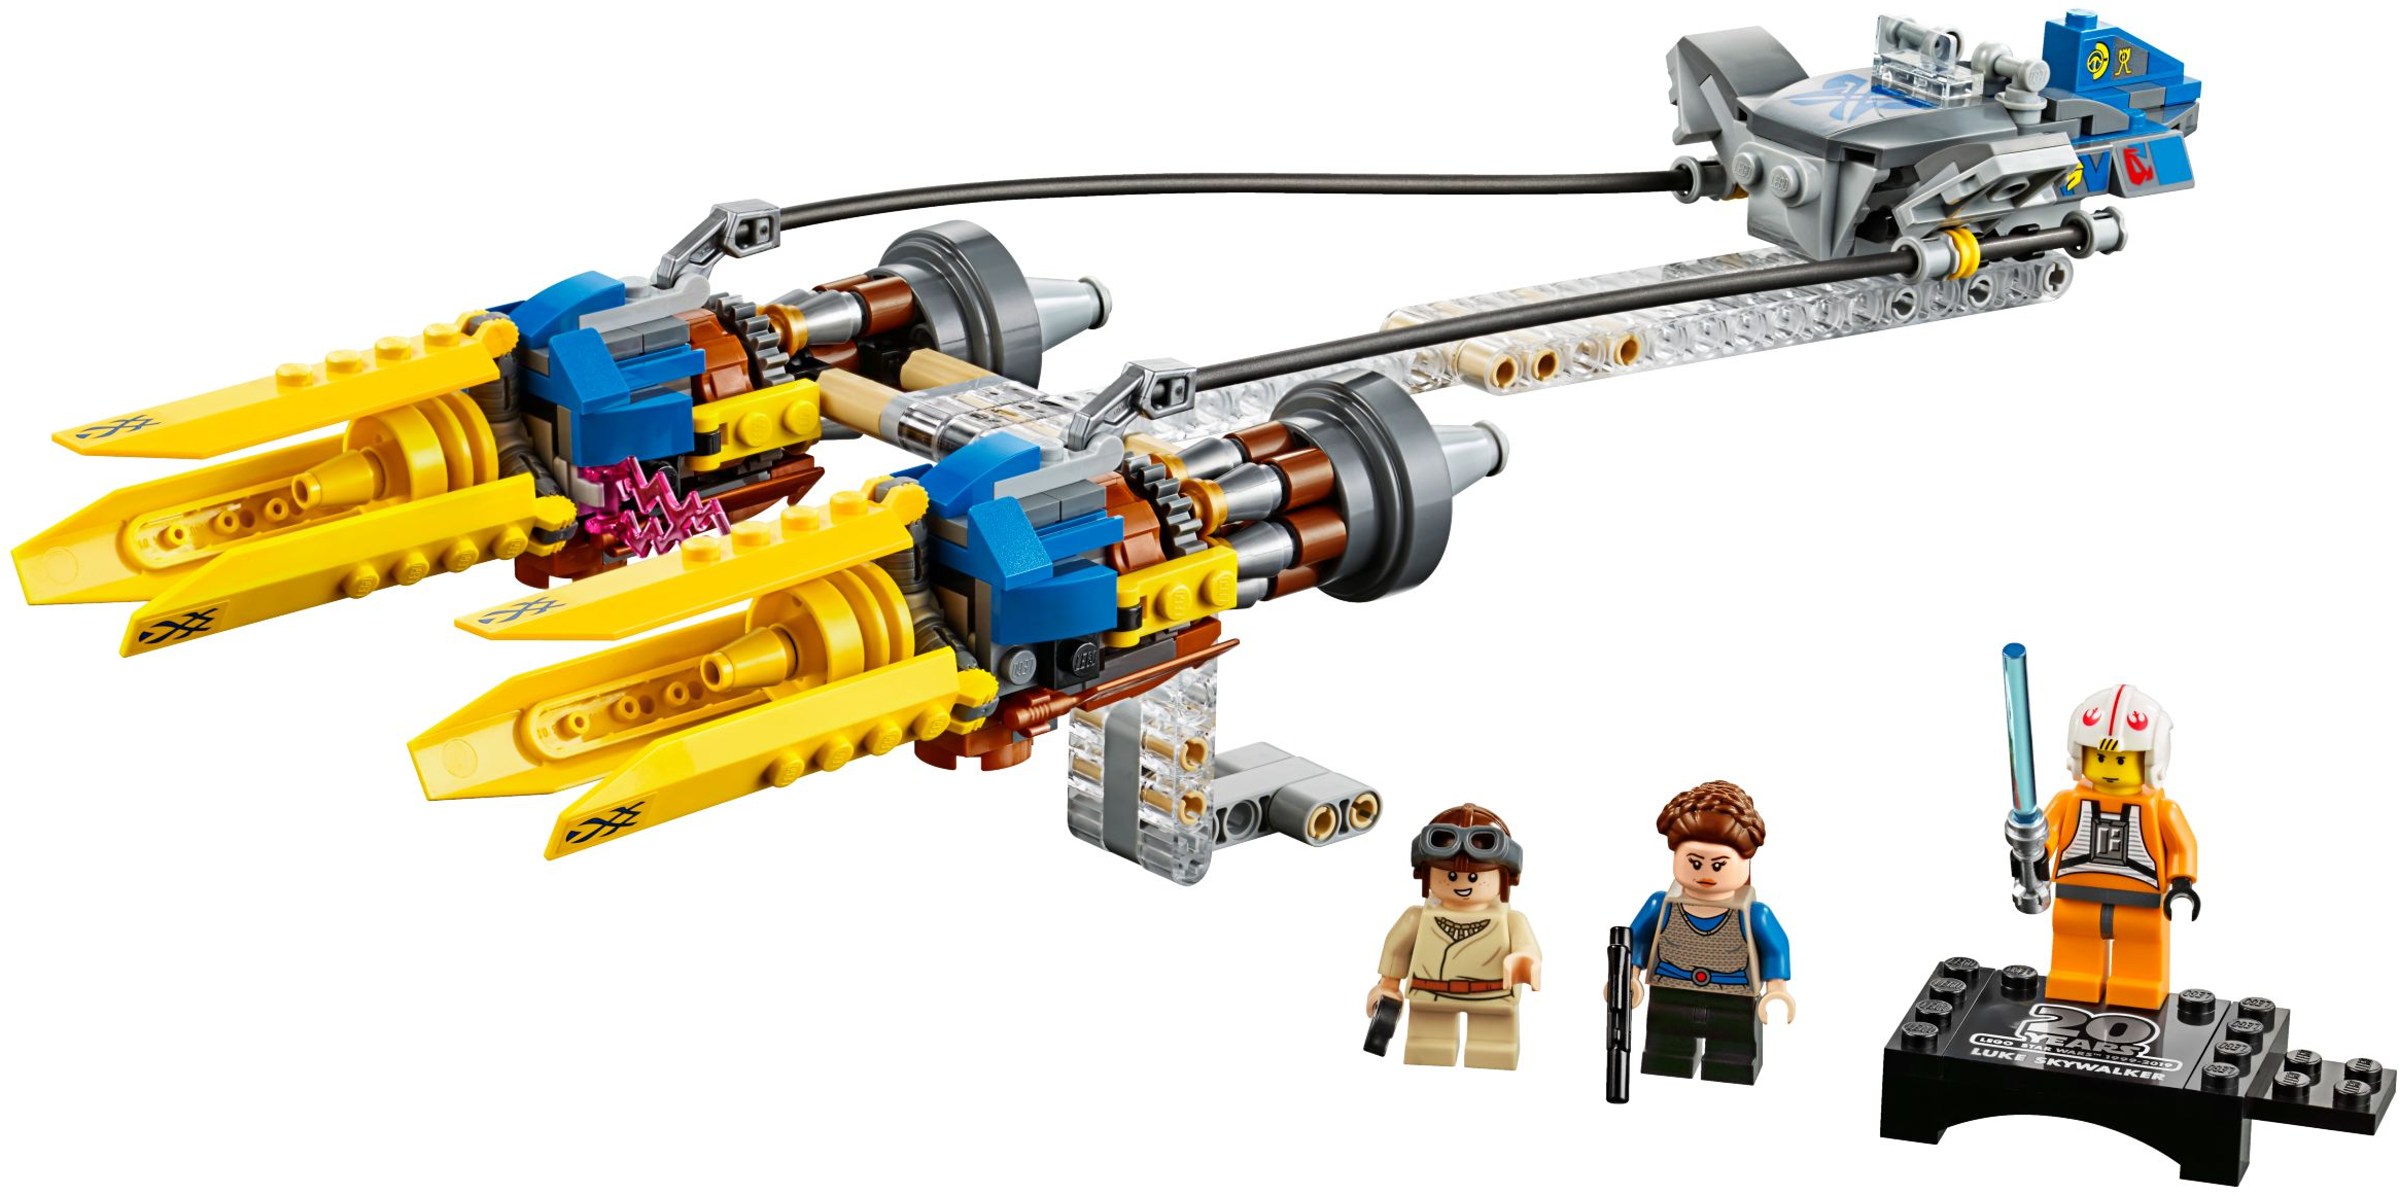 LEGO Star Wars - Anakin